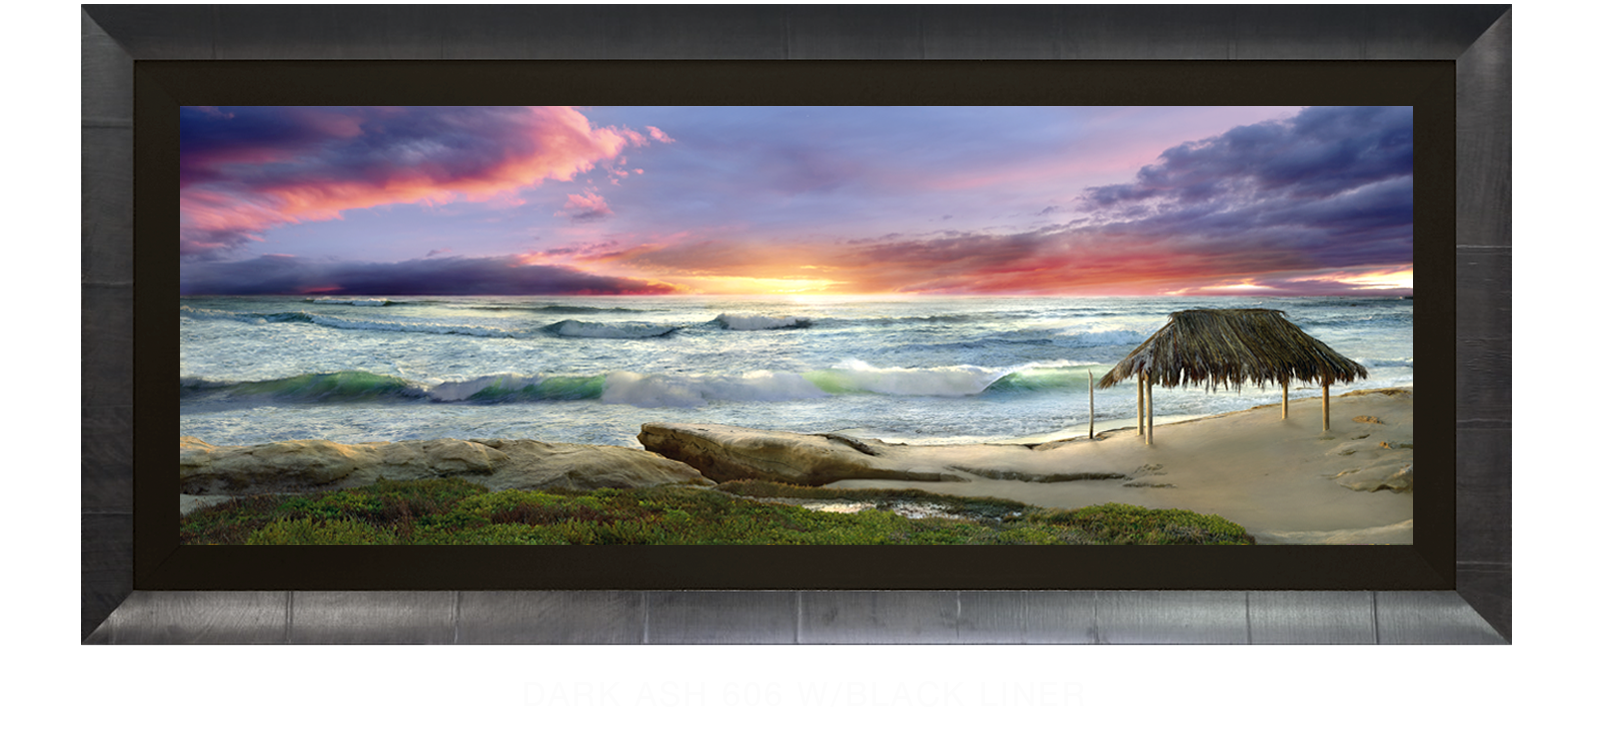 17AWAITANCE Dark Ash 606 w_Blk Liner T